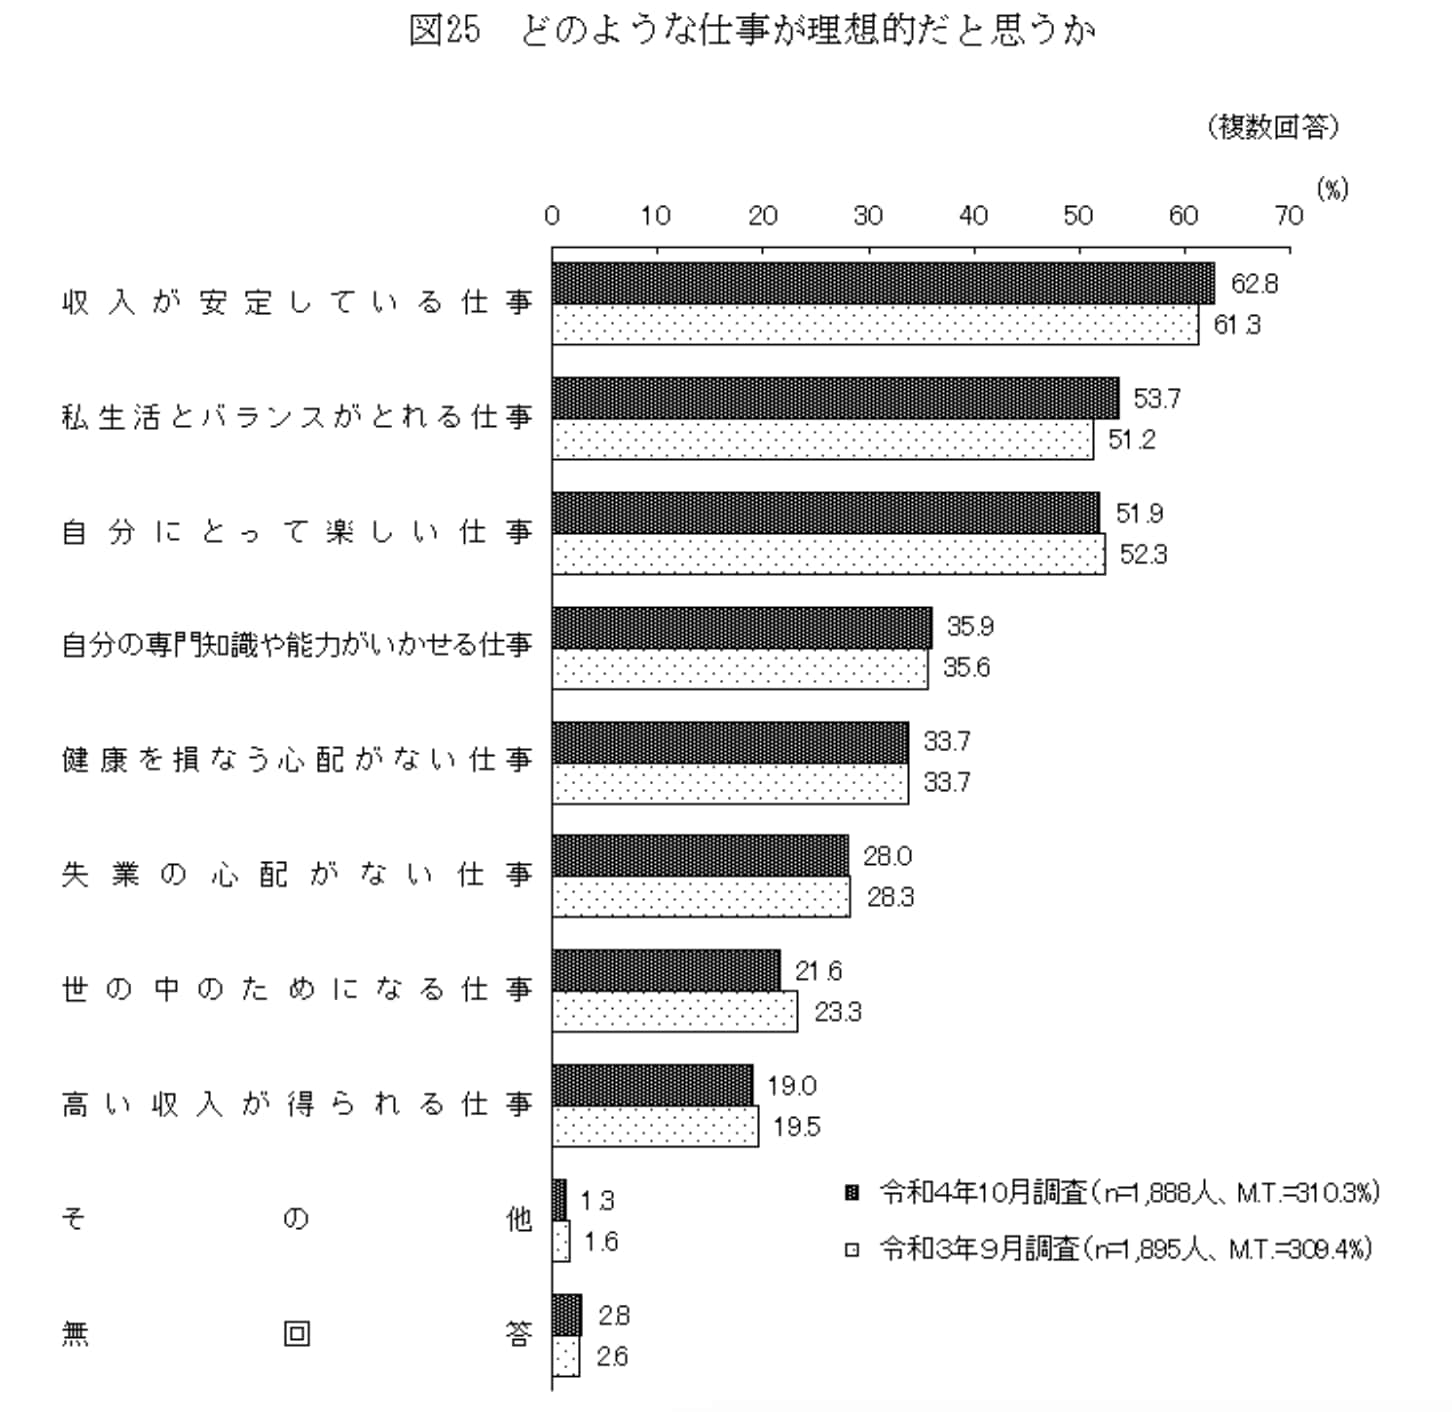 出典：内閣府「世論調査」図25(最後の方)